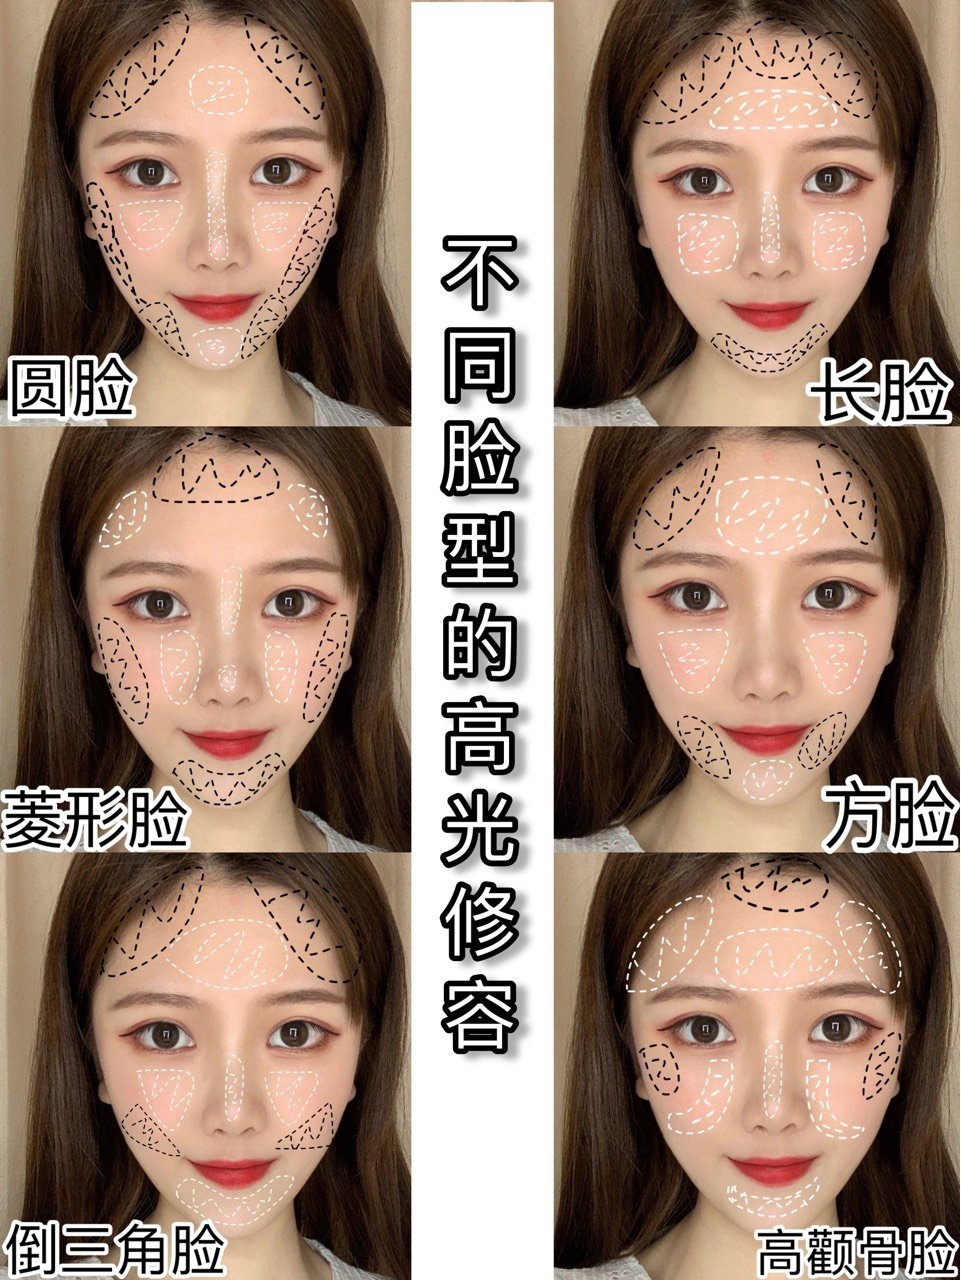 新手化妆对准脸型高光 修容画法 拒绝公式化